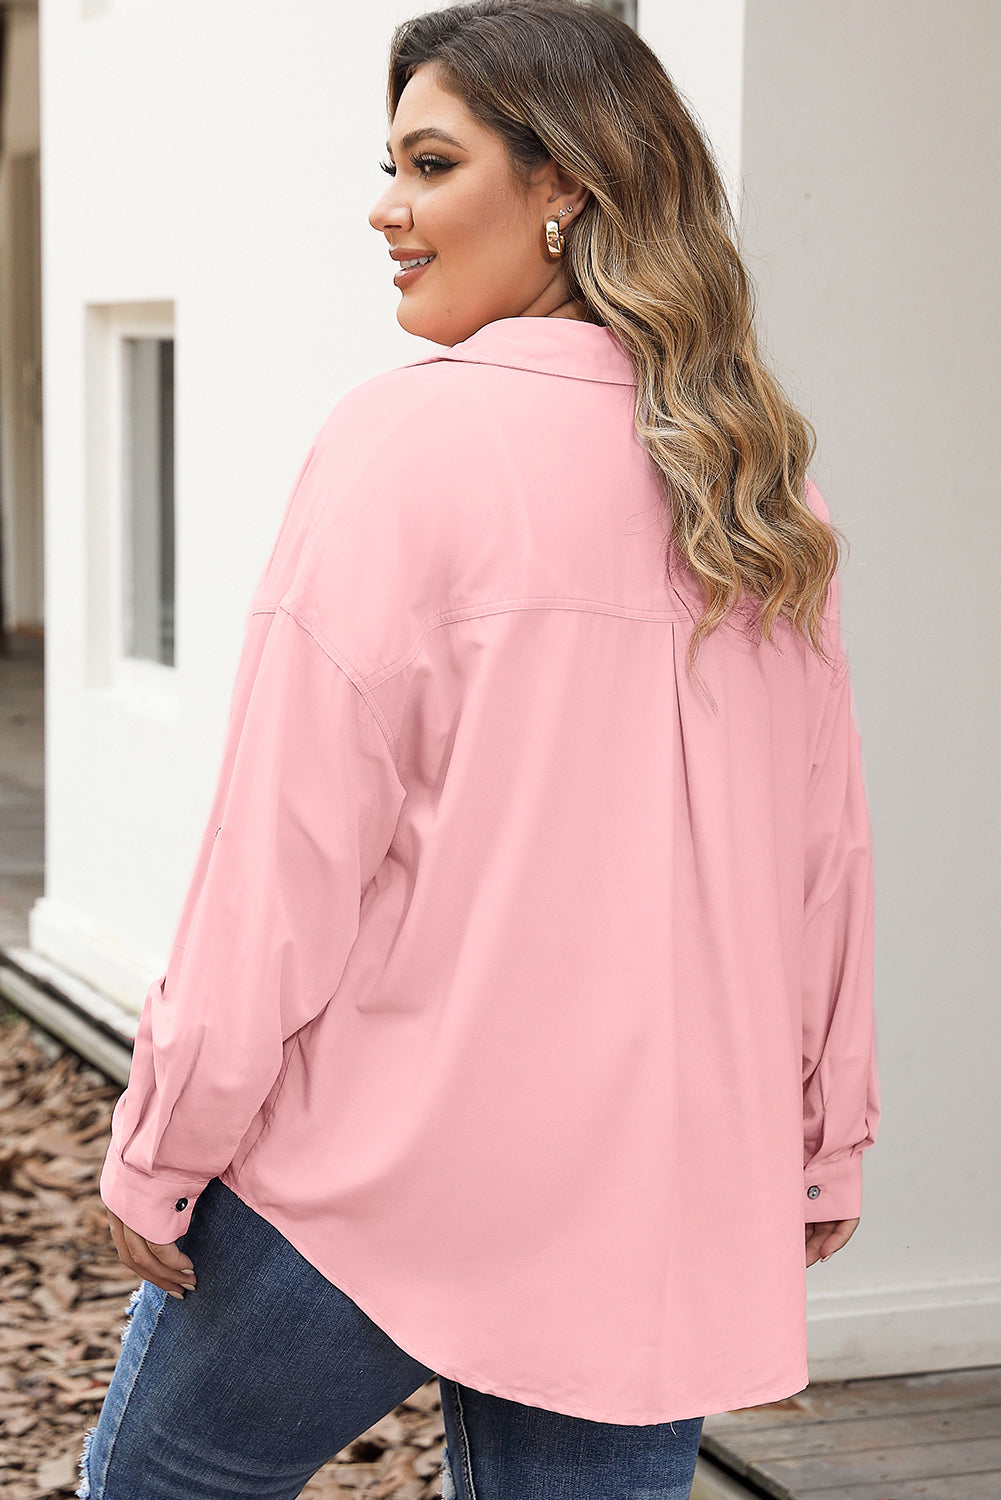 Chemise boutonnée rose grande taille avec poche à rabat et manches à patte